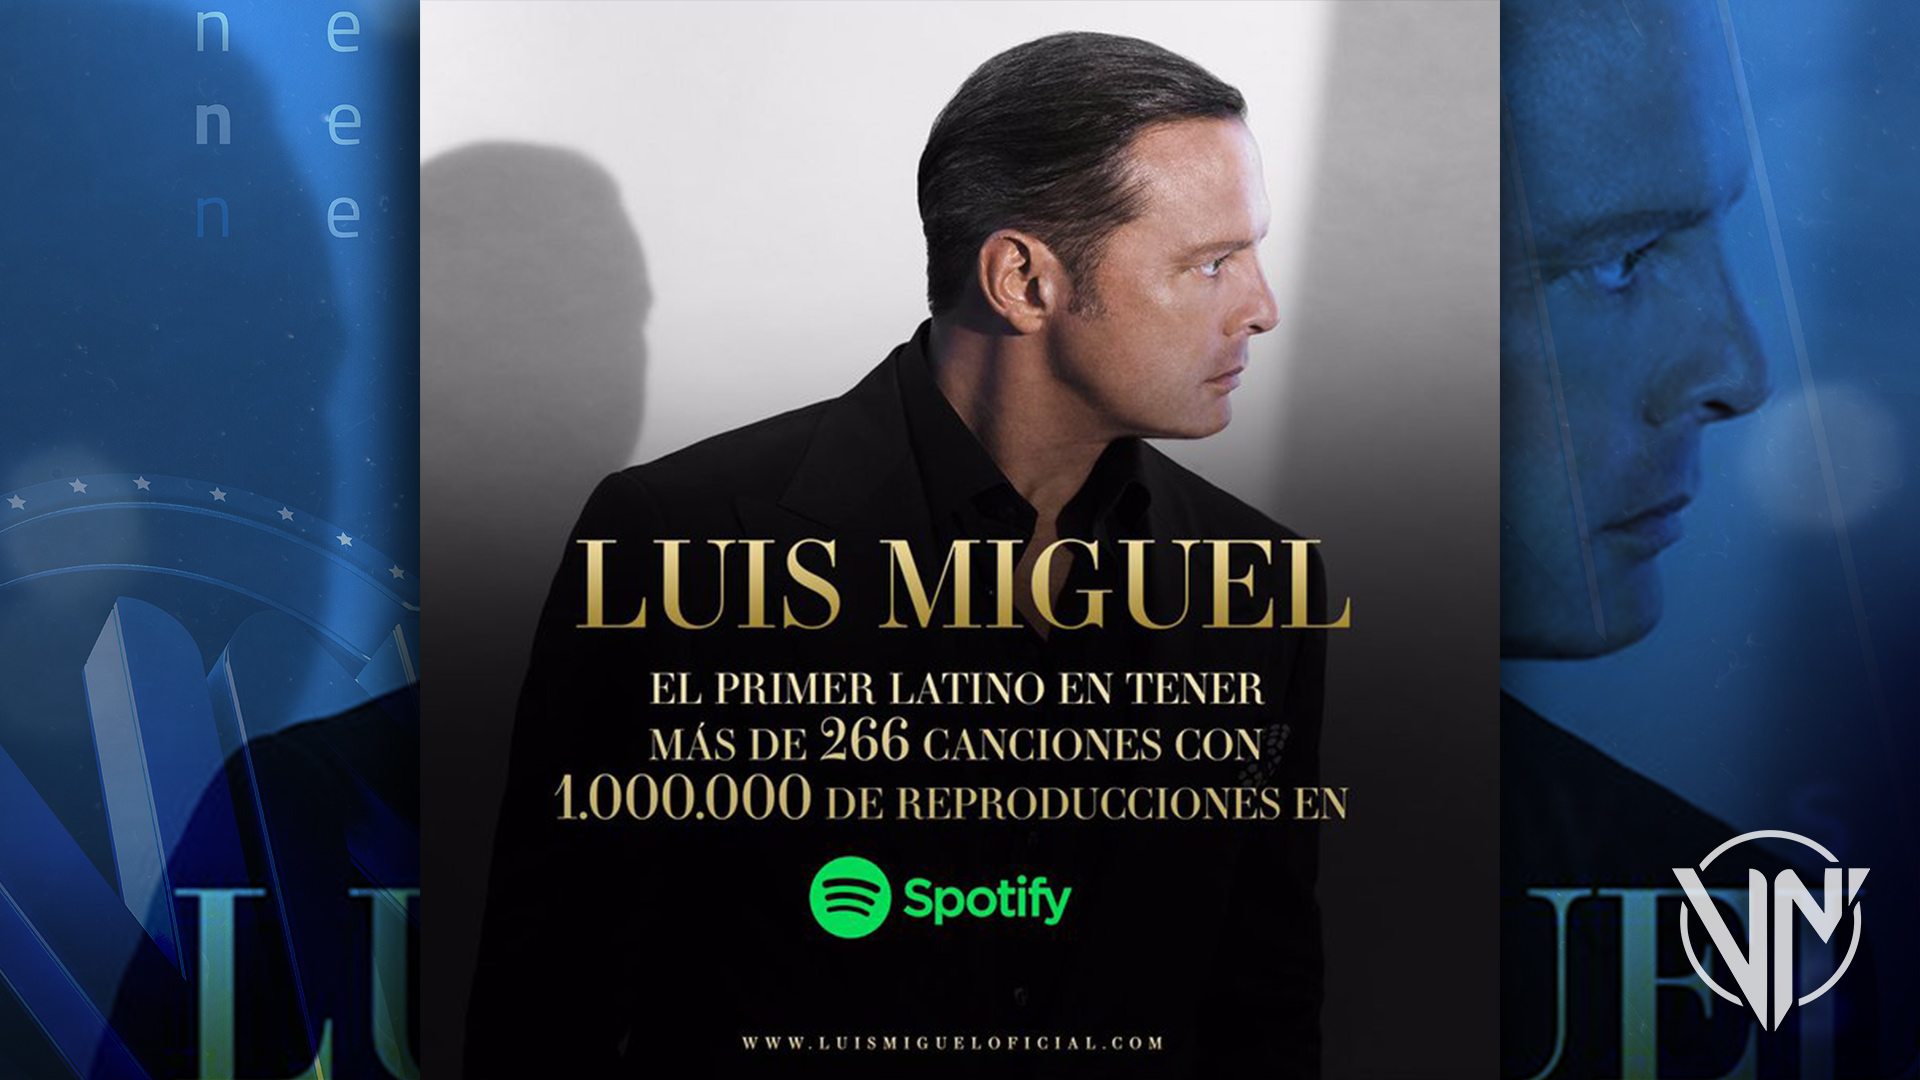 Luis Miguel rompe nuevo récord de reproducciones en Spotify